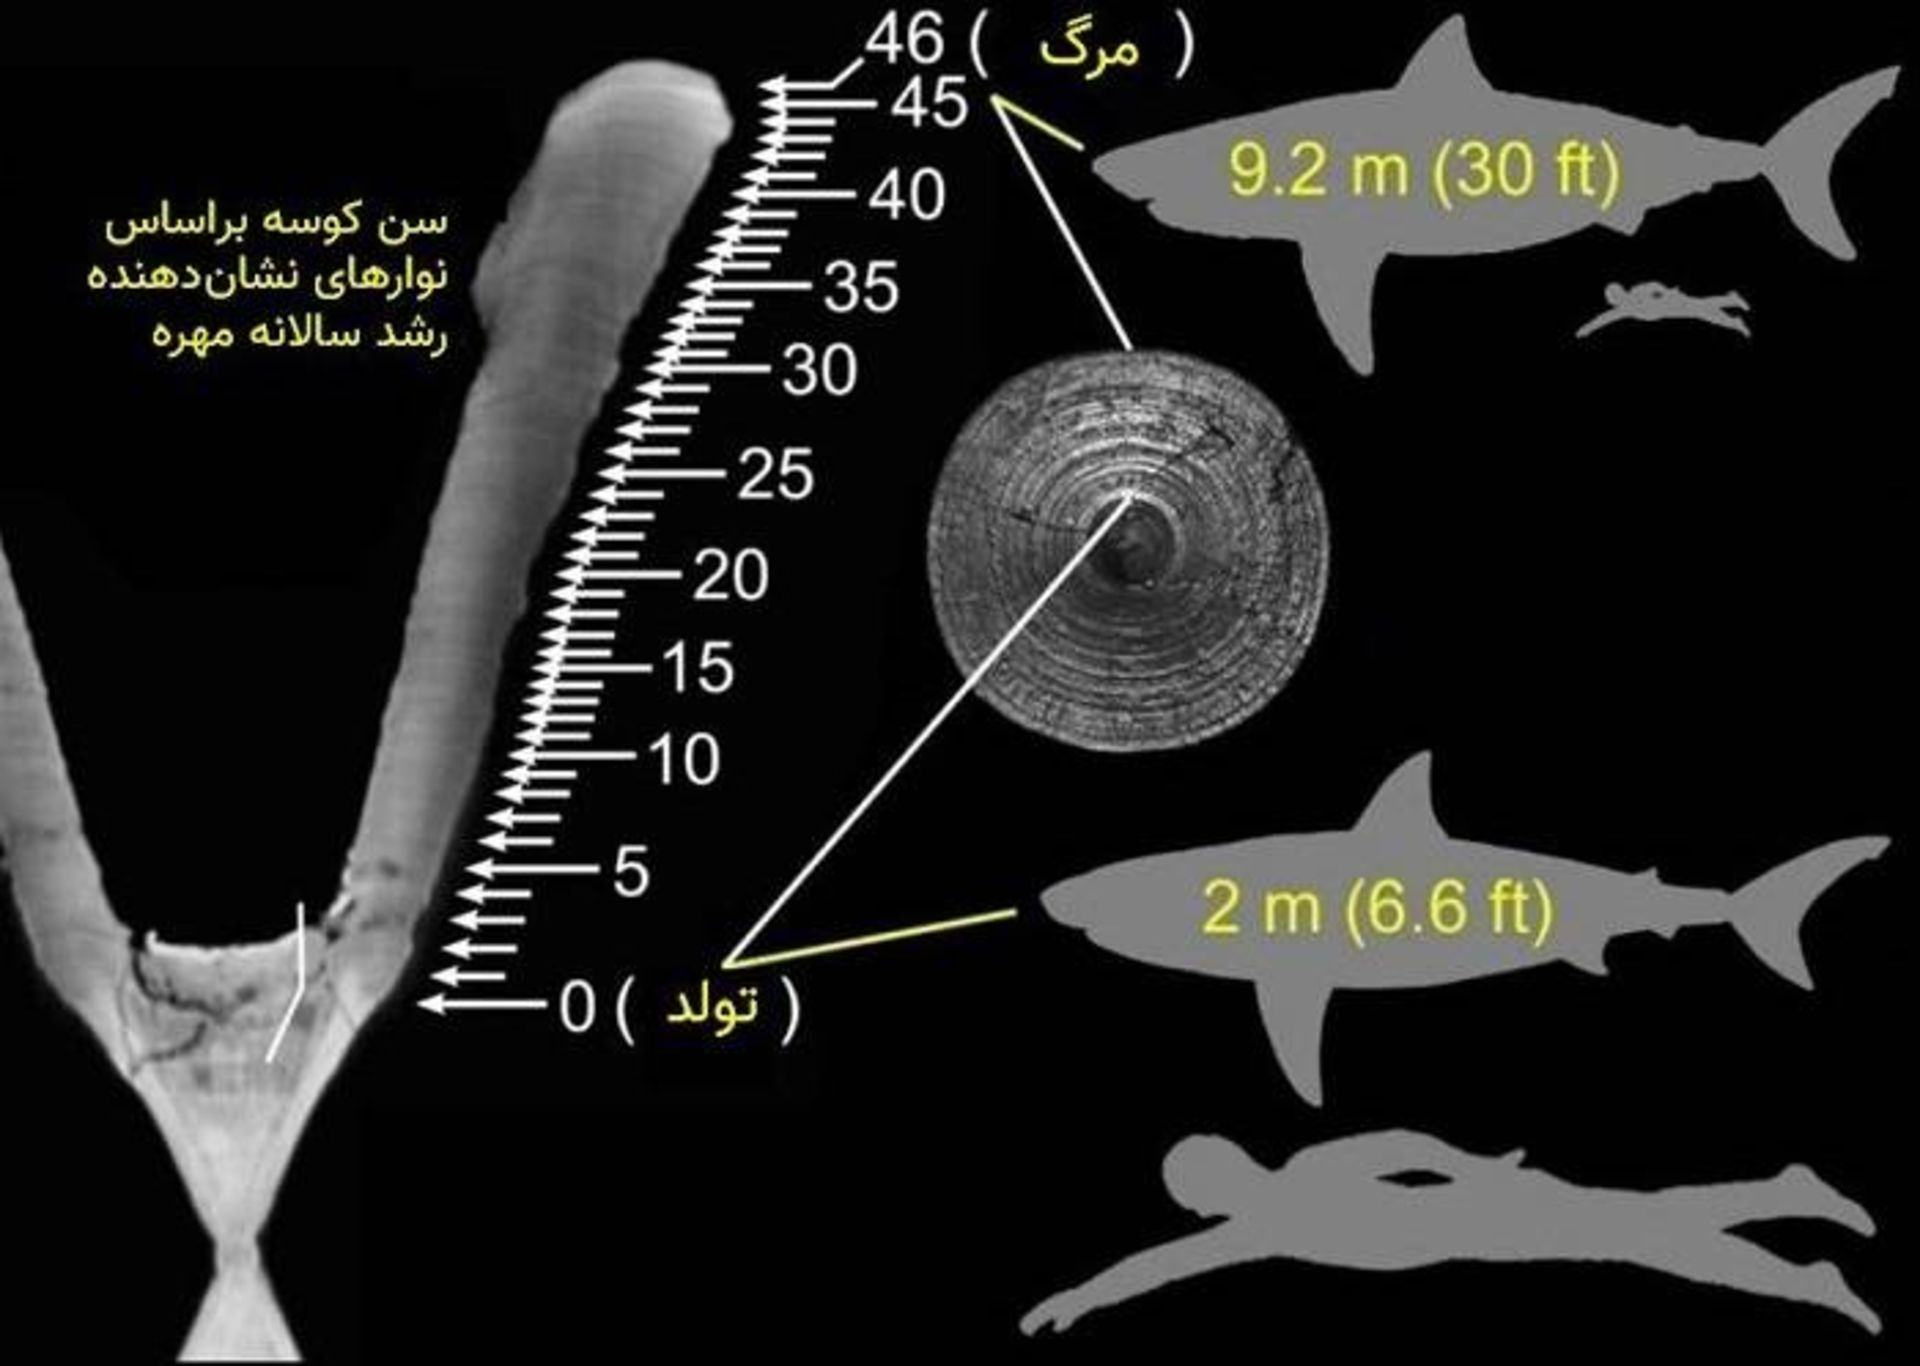 مرجع متخصصين ايران تعيين سن كوسه بر اساس حلقه مهره / estimating shark age